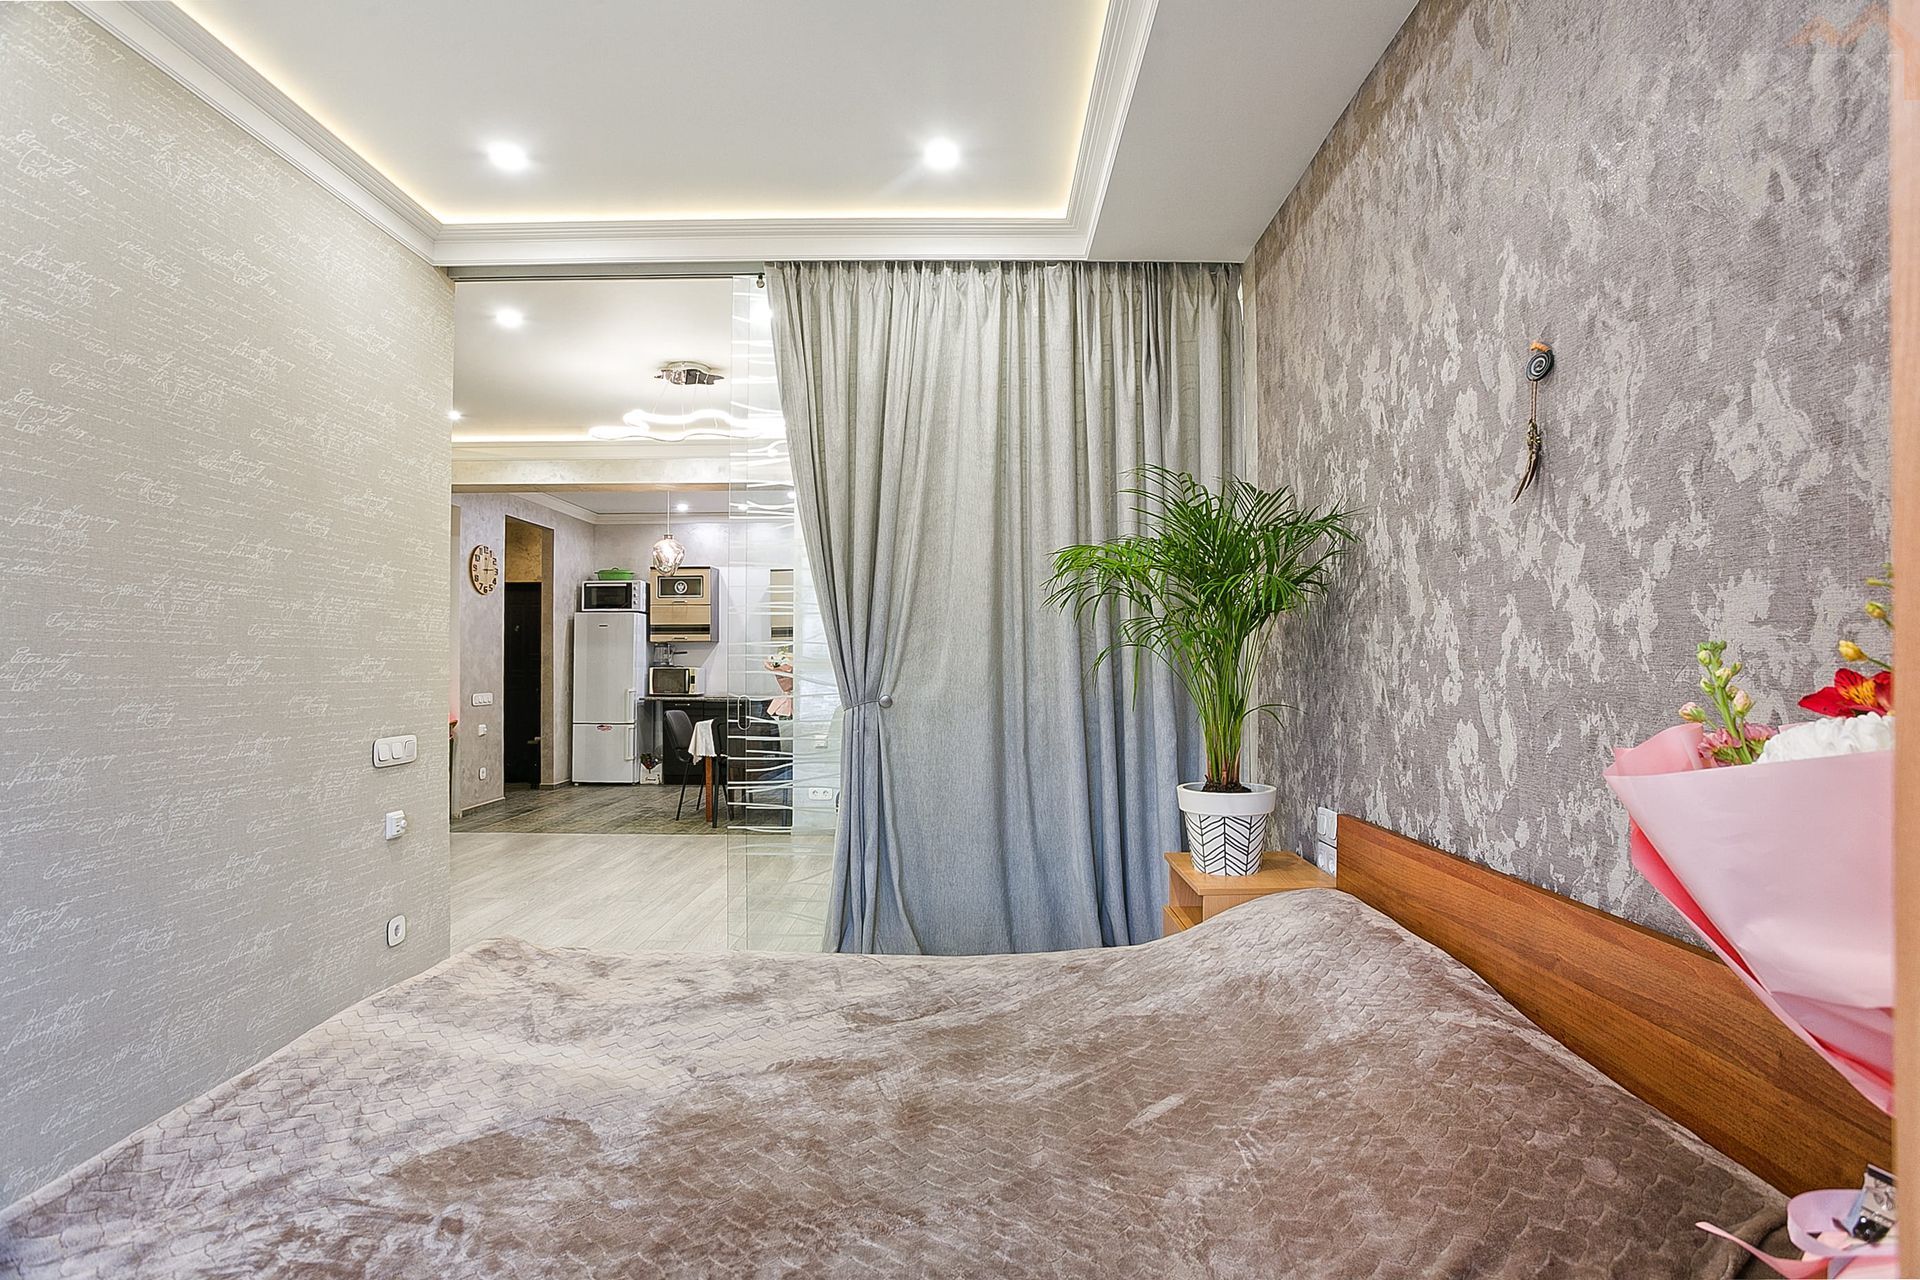 Продаётся двухкомнатная квартира со свежим ремонтом в Жилом комплексе комфорт-класса «Алмаз». Площадь 55,6 кв.м.